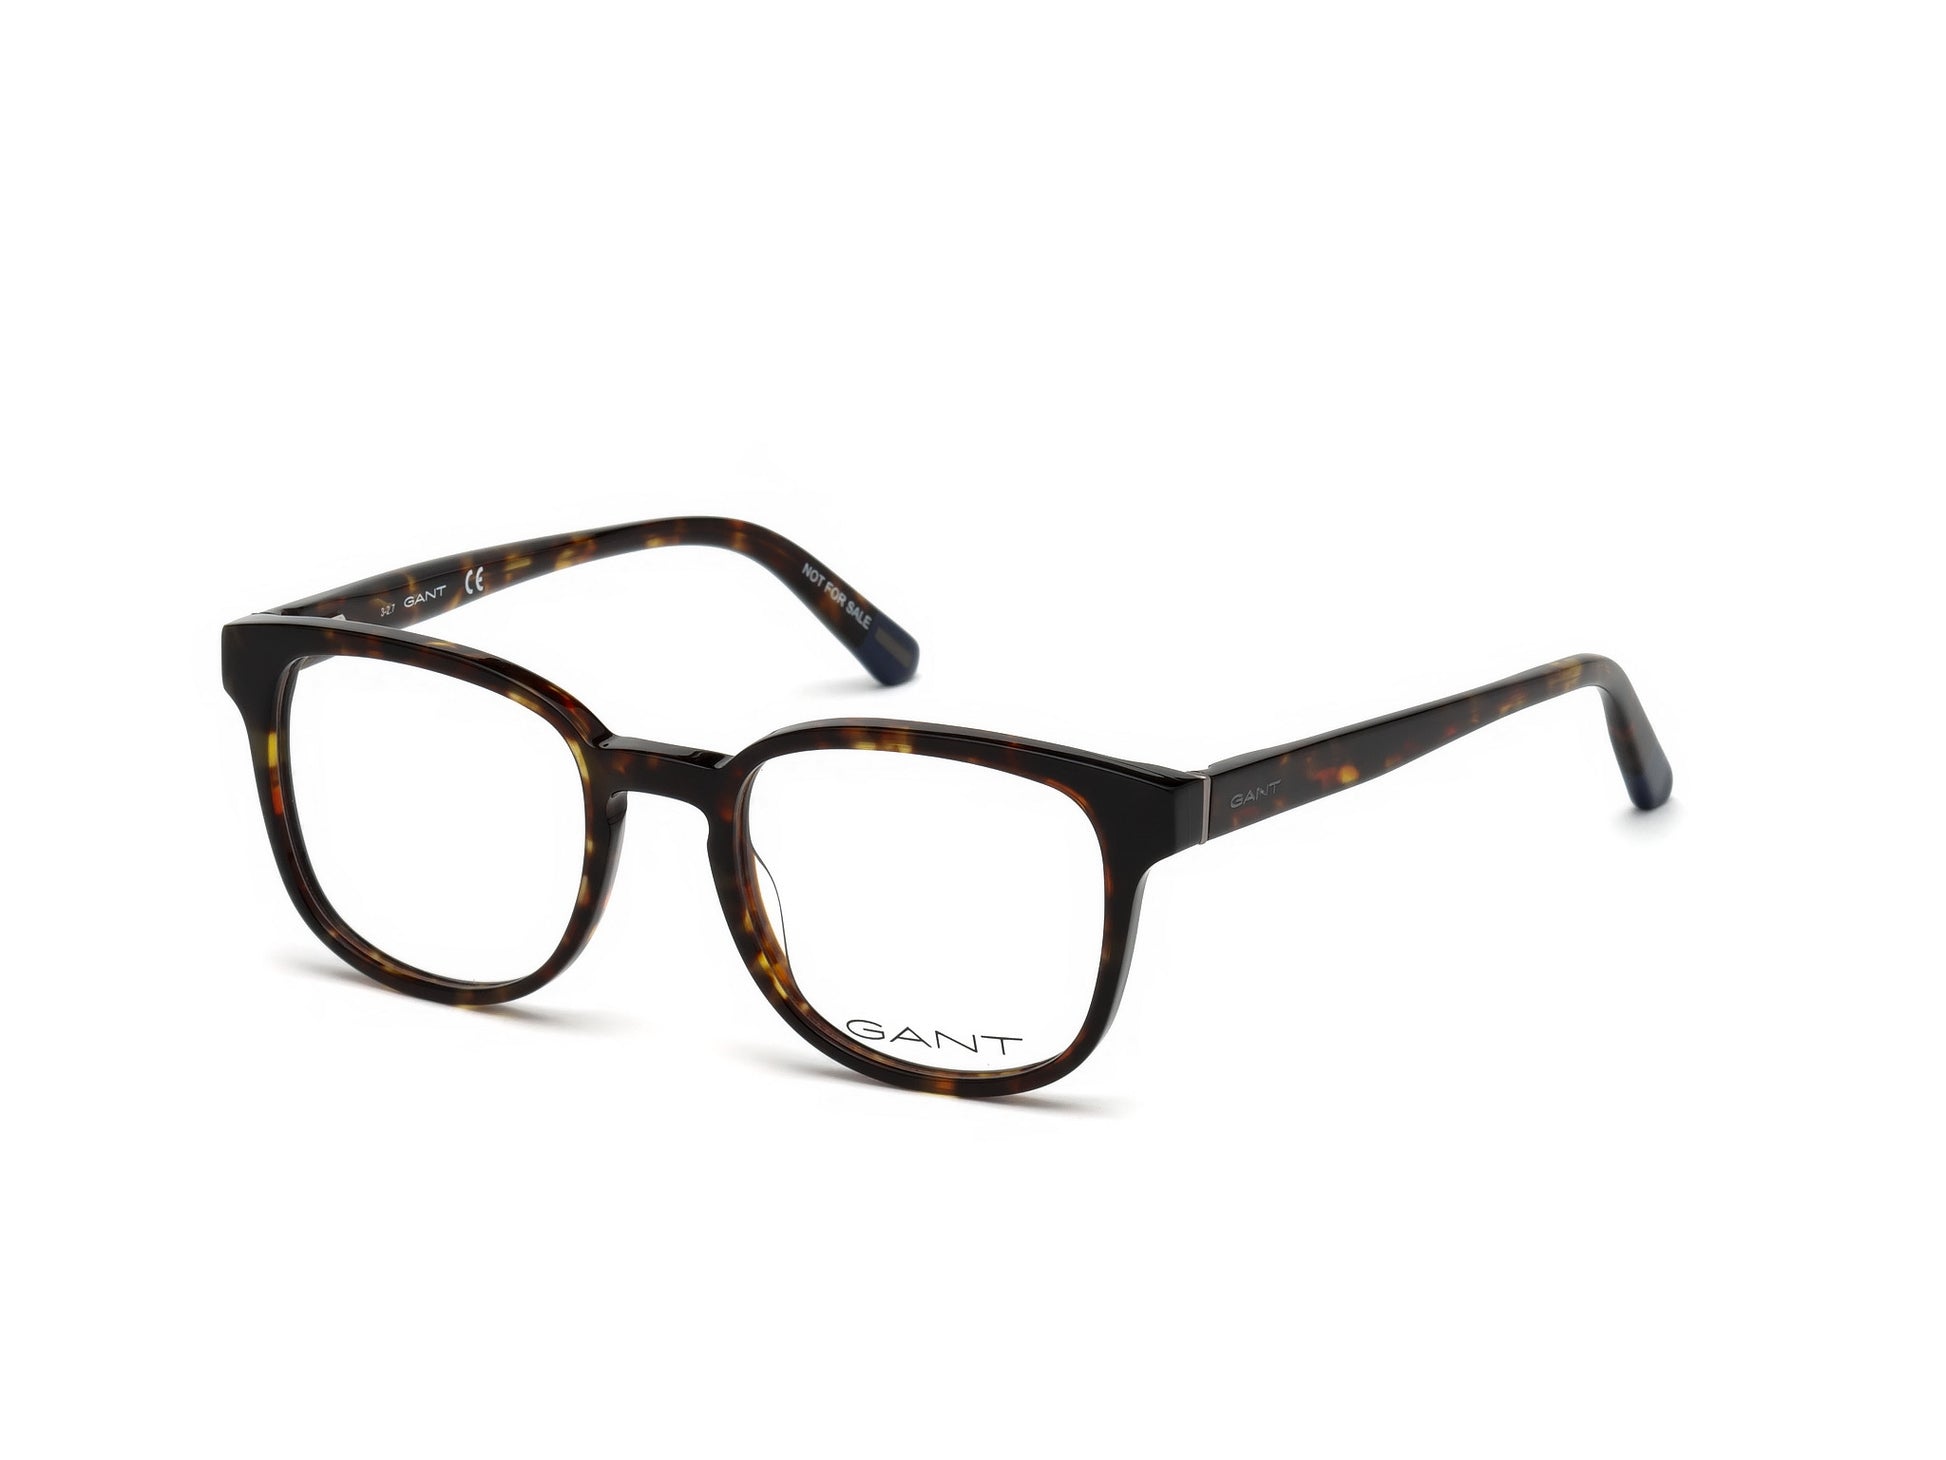 Gant GA3175 Round Eyeglasses 052-052 - Dark Havana